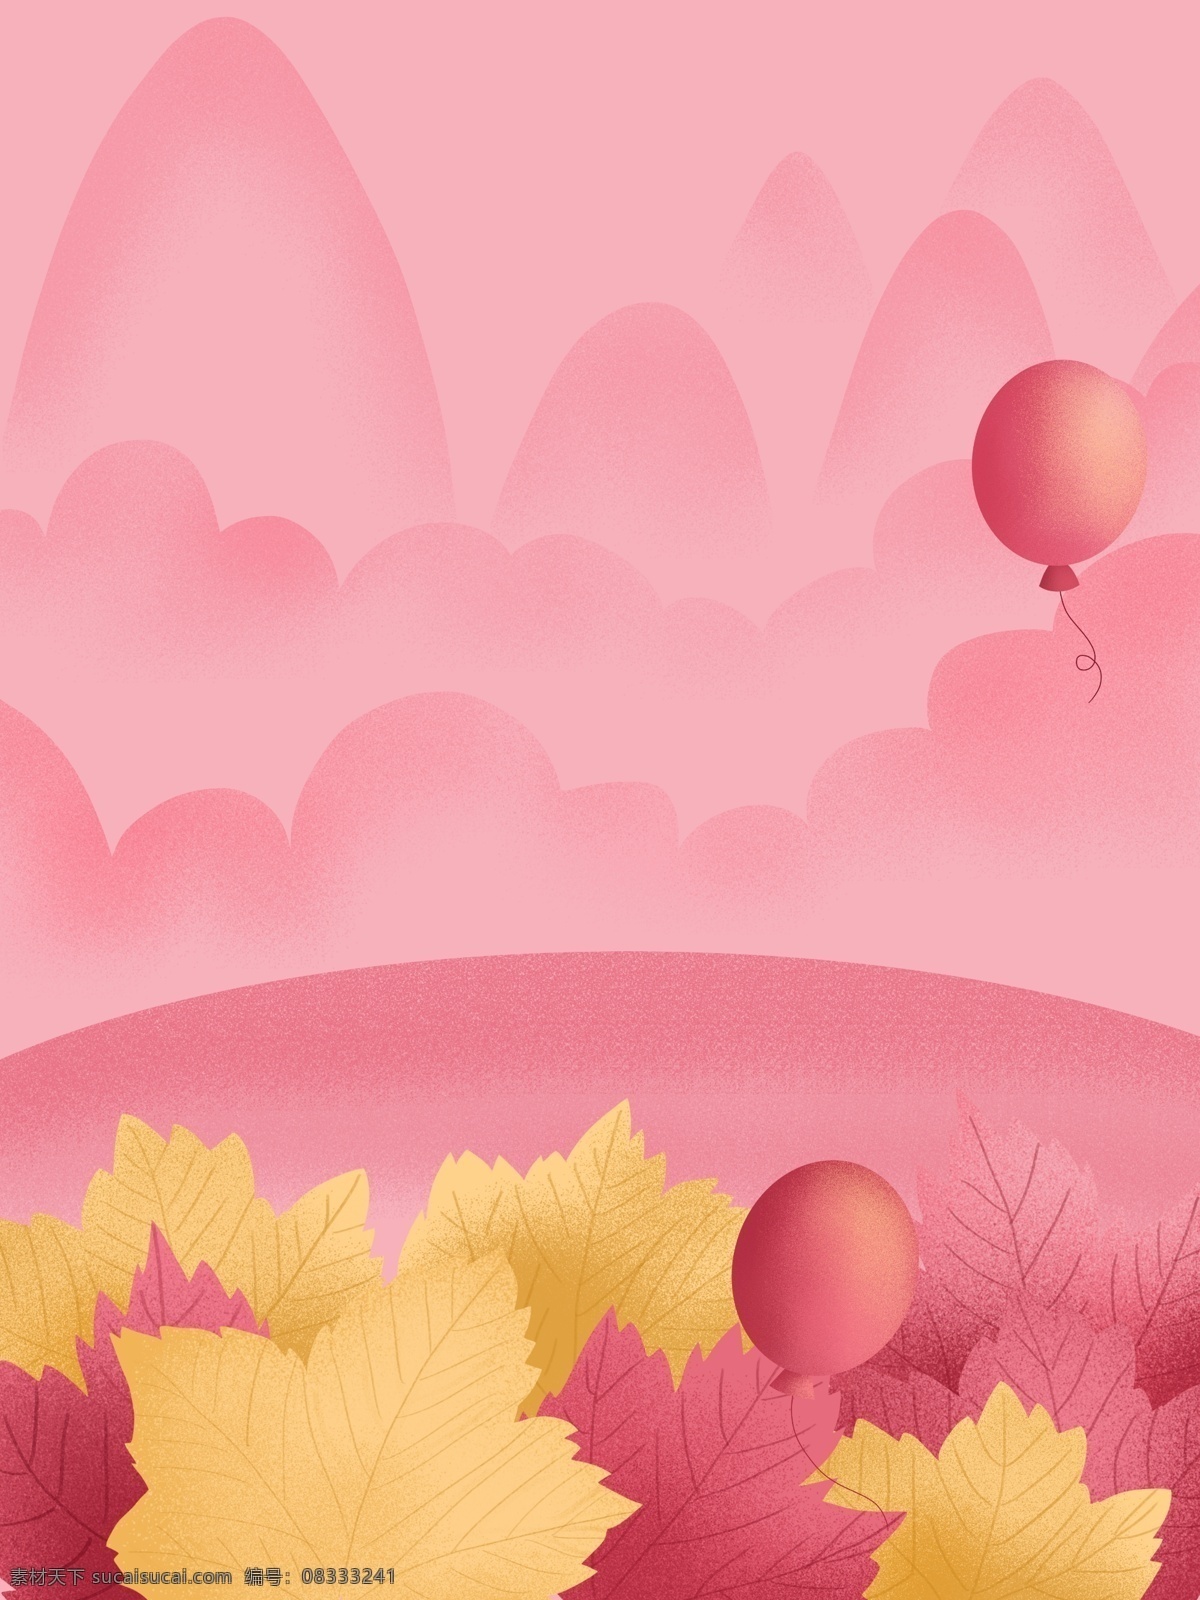 手绘 枫叶 粉色 背景 黄色枫叶 粉色气球 手绘山峰 背景素材 粉色背景 广告背景